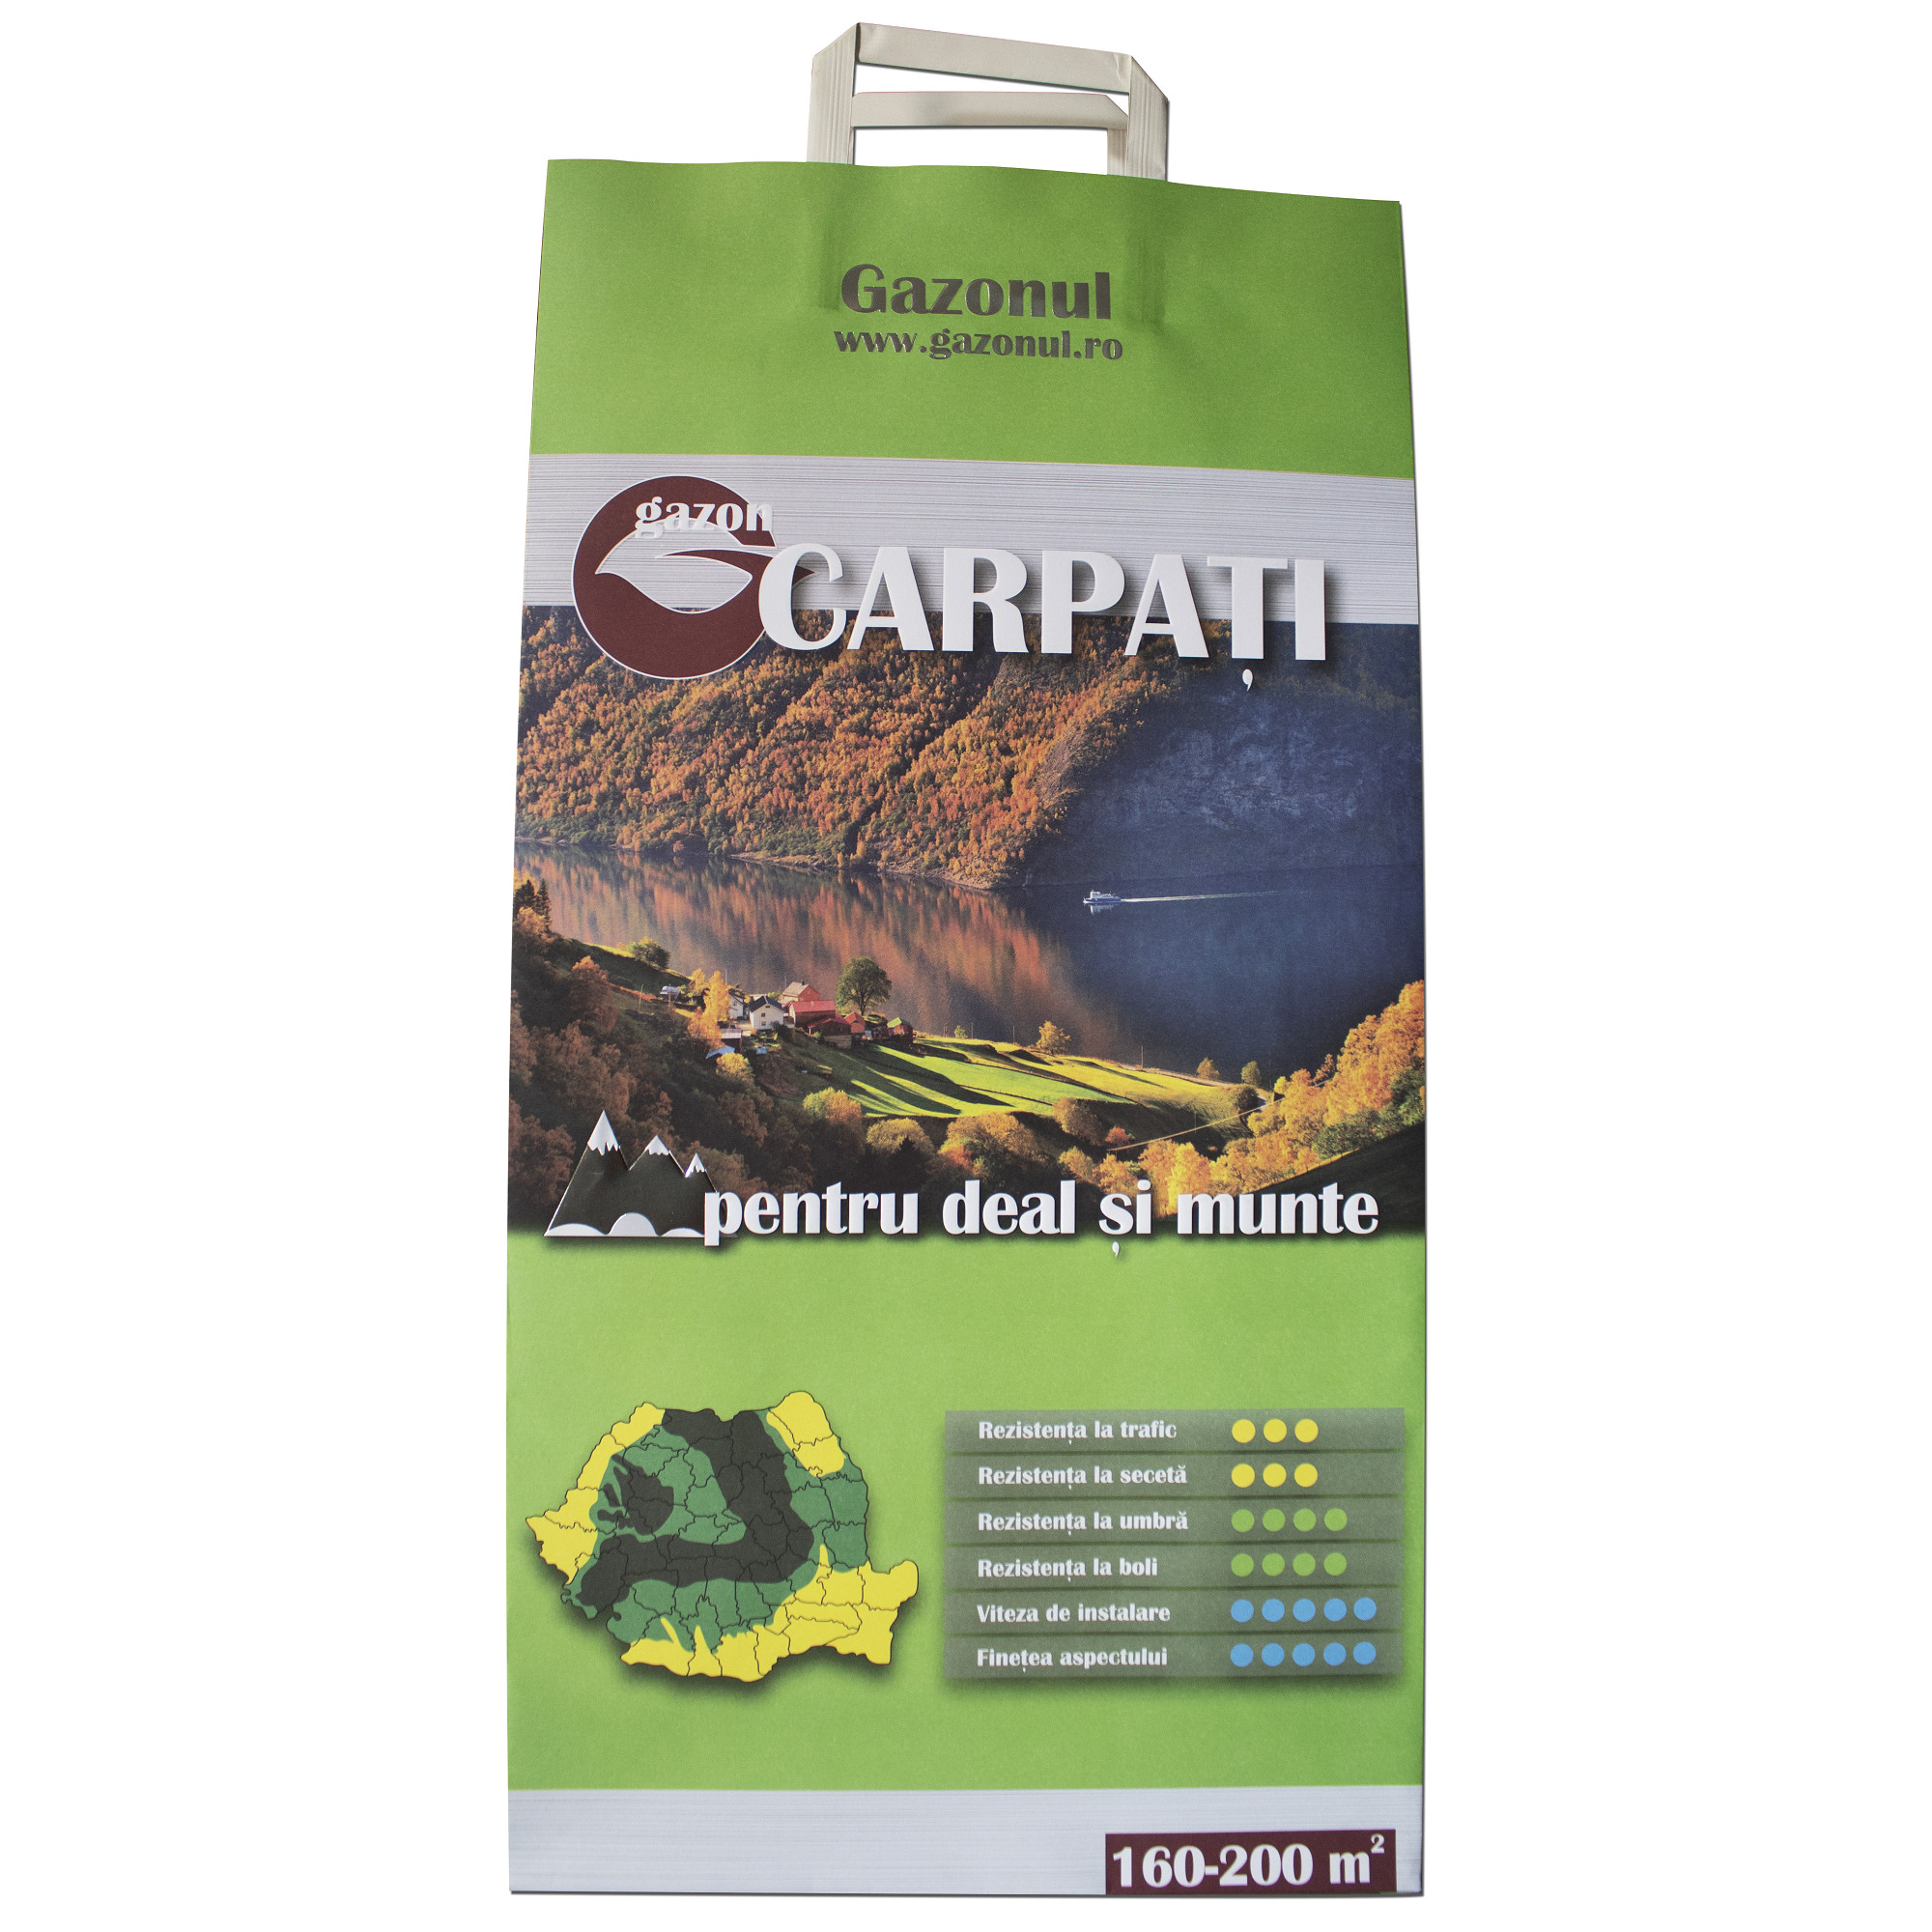 Seminte de Gazon Carpati Gazonul 4kg